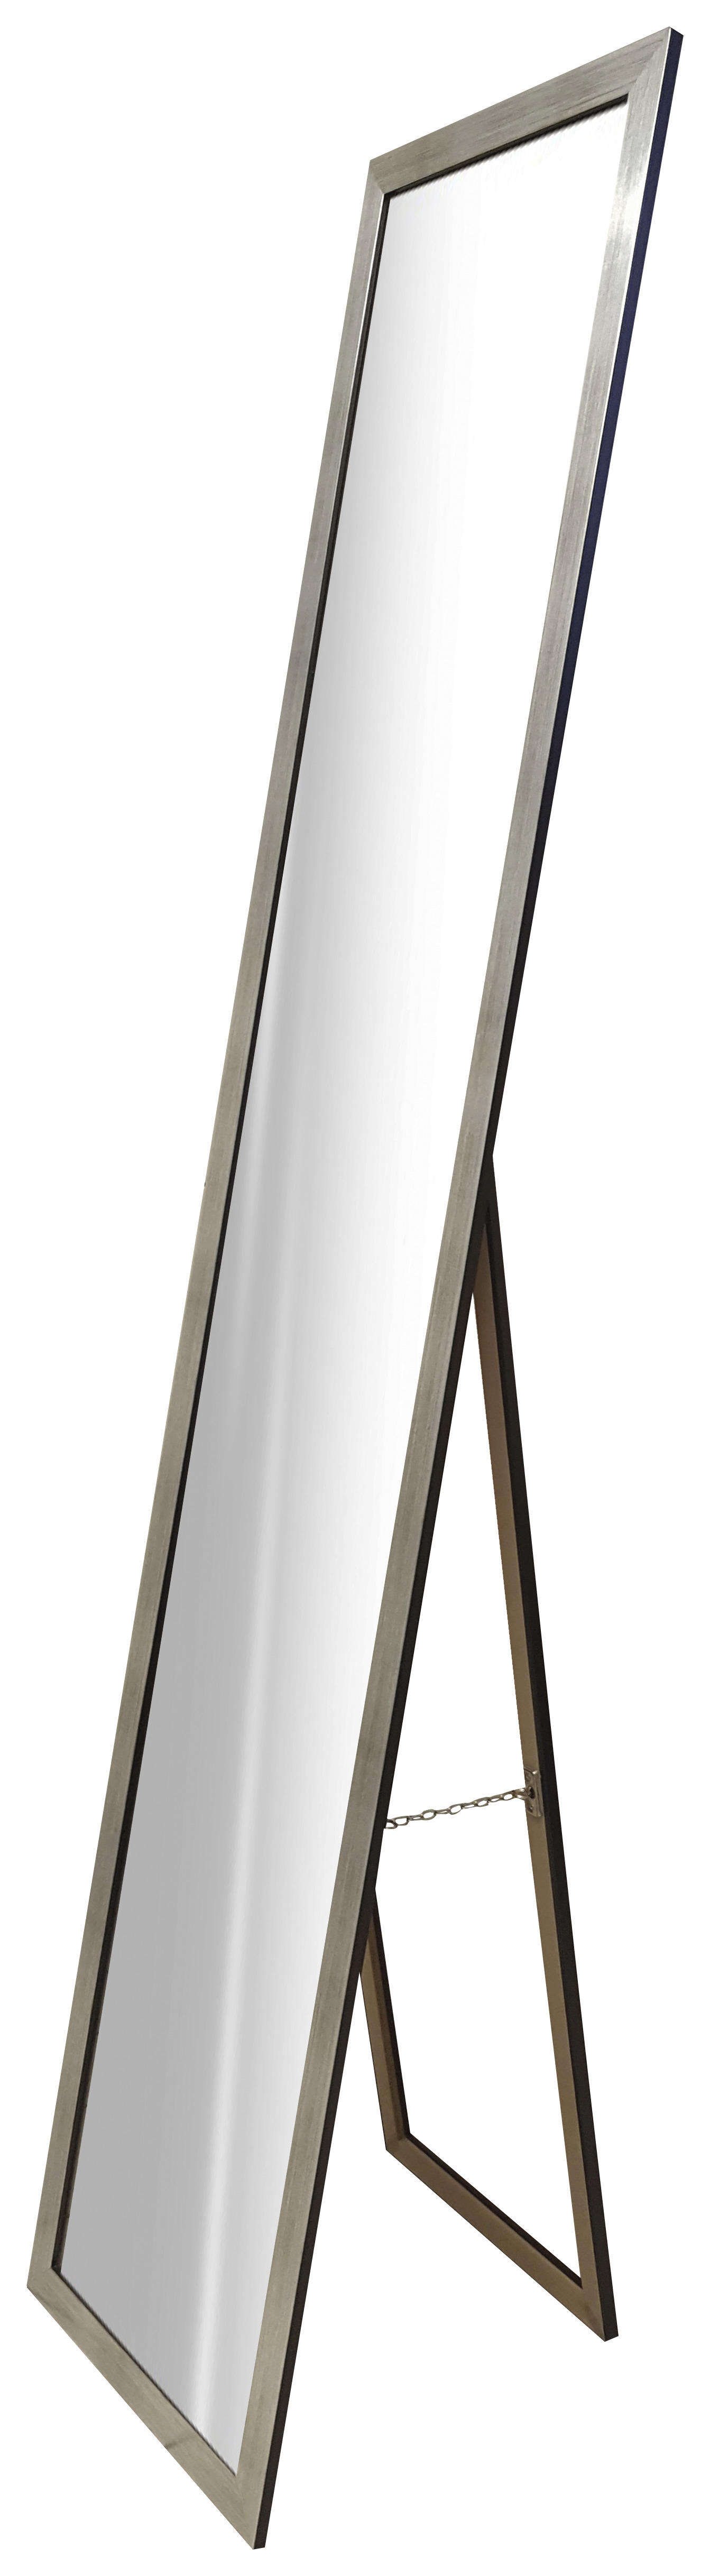 STANDSPIEGEL 36/175/3,5 cm  - Silberfarben, Design, Glas/Holzwerkstoff (36/175/3,5cm) - Carryhome